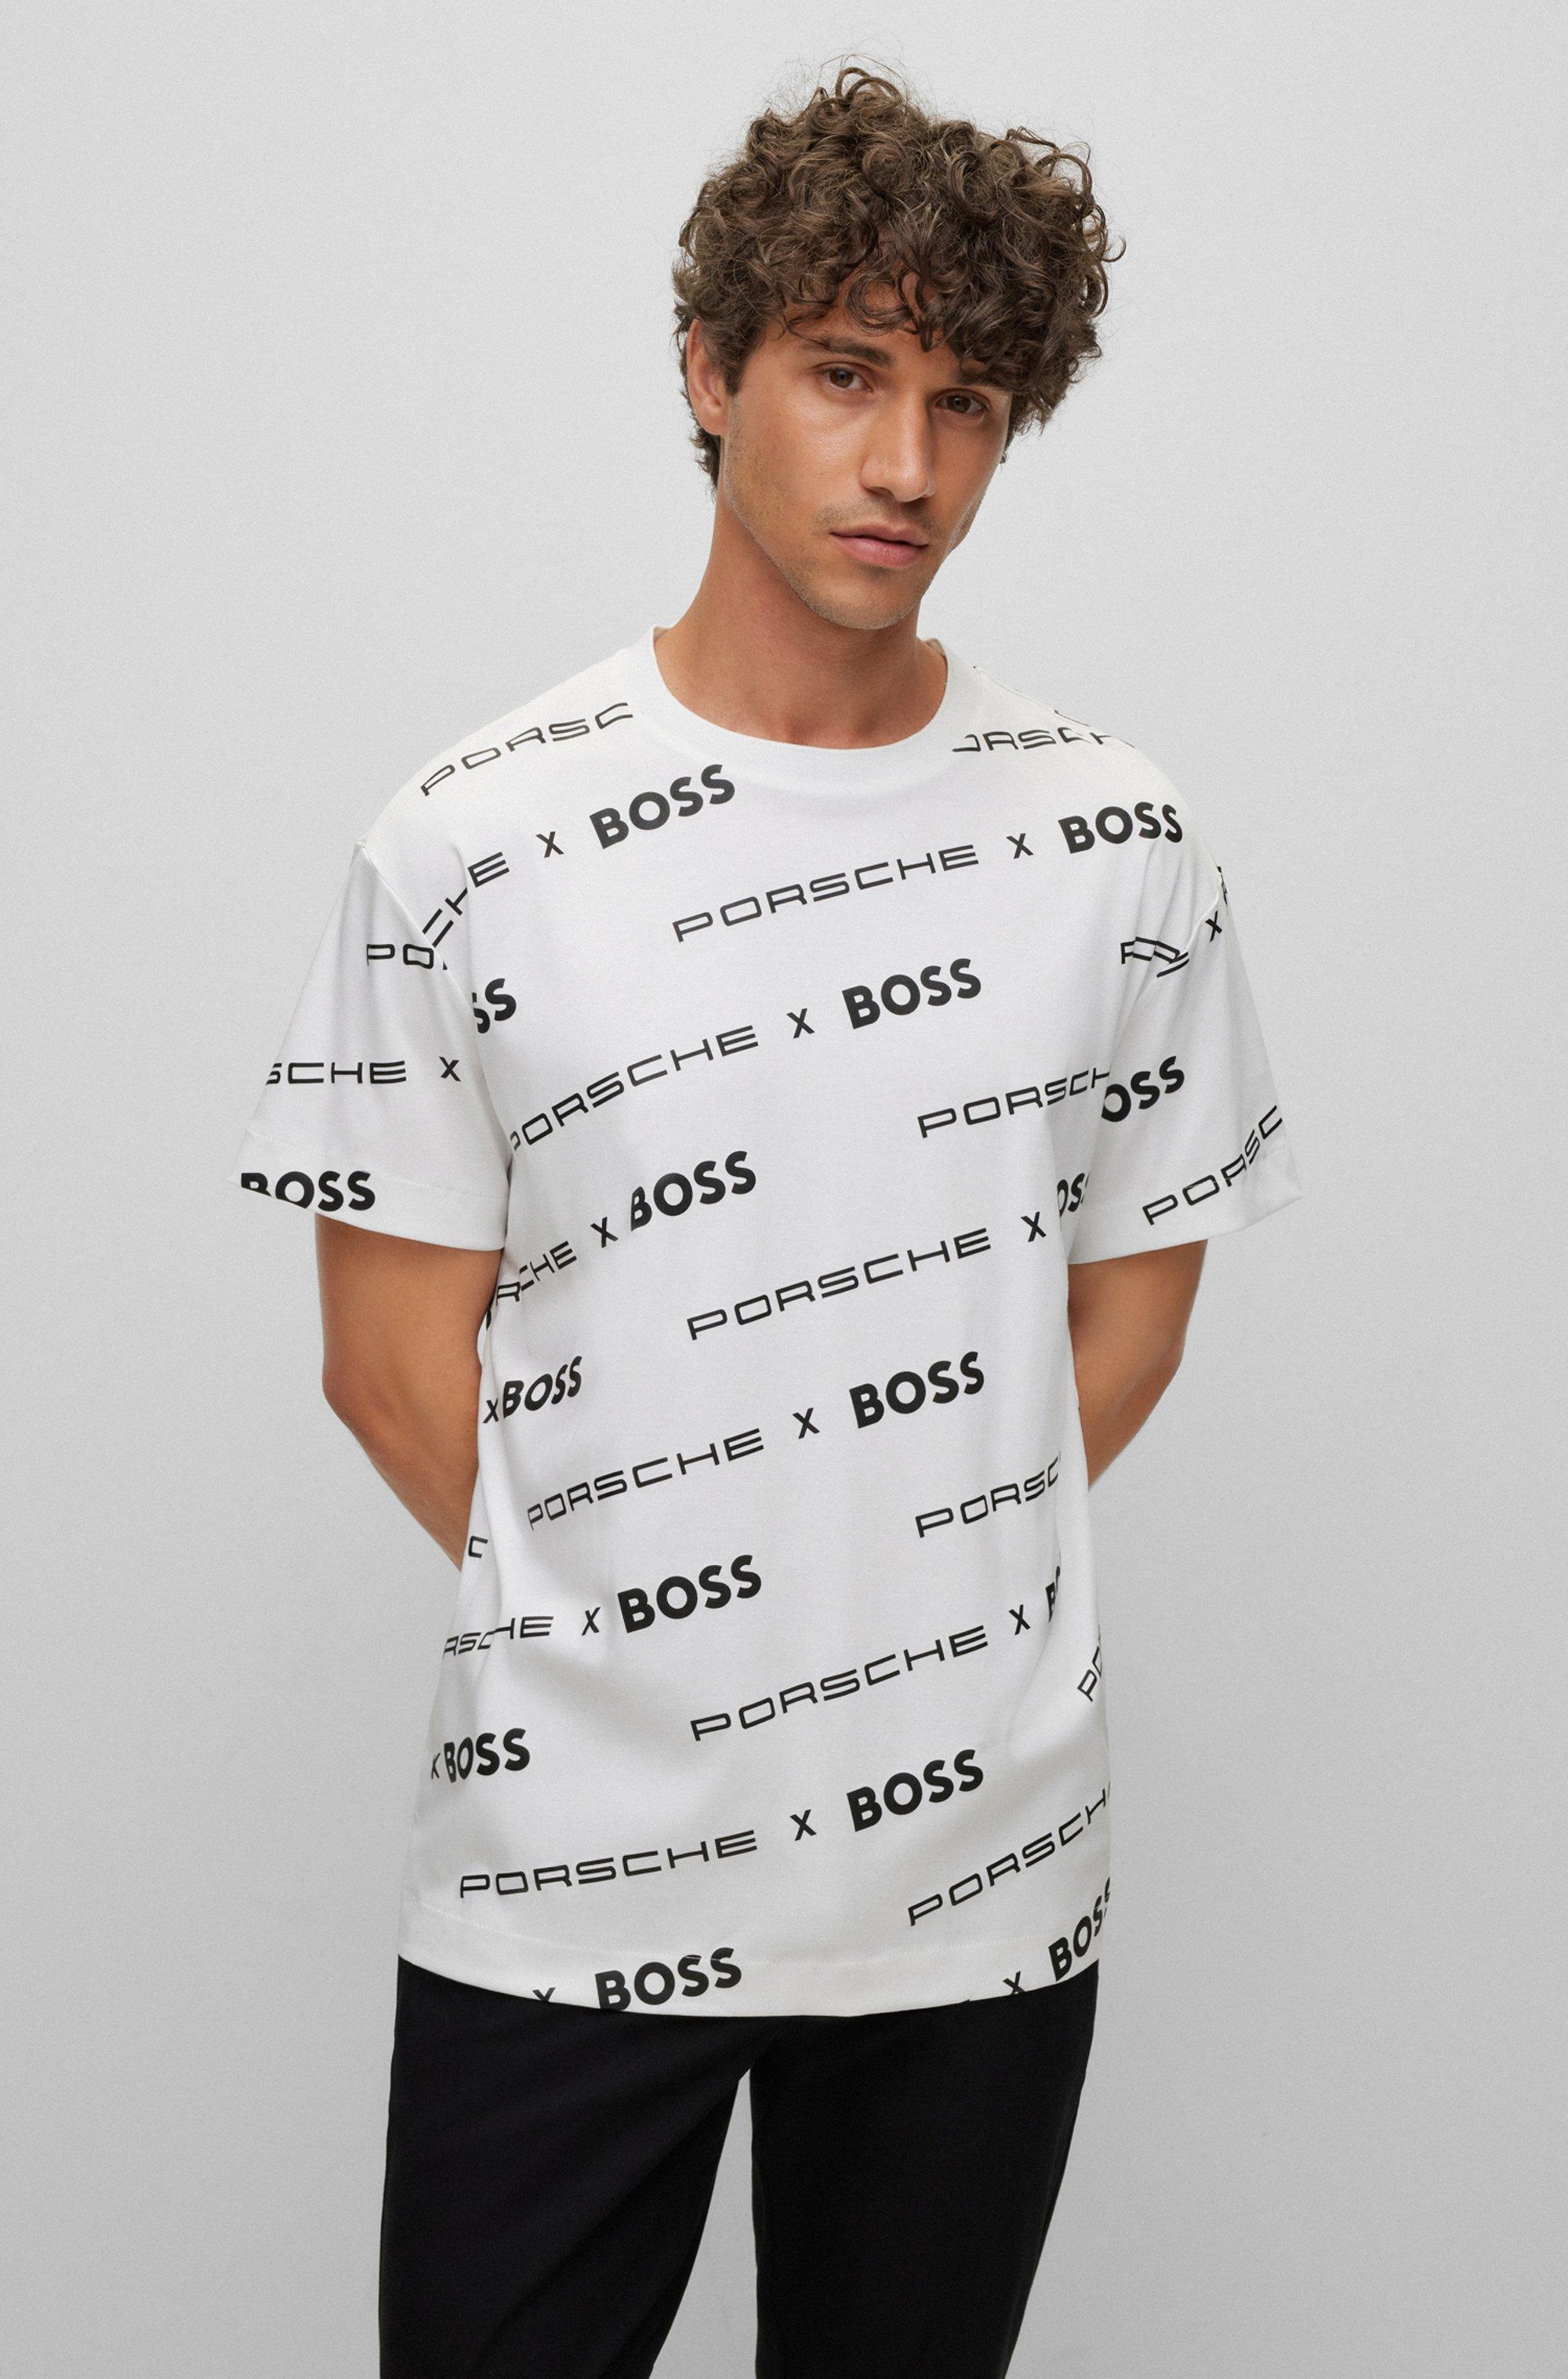 BOSS by HUGO BOSS Porsche X Boss Patterned Sweatshirt In Interlock Cotton  in White for Men | Lyst